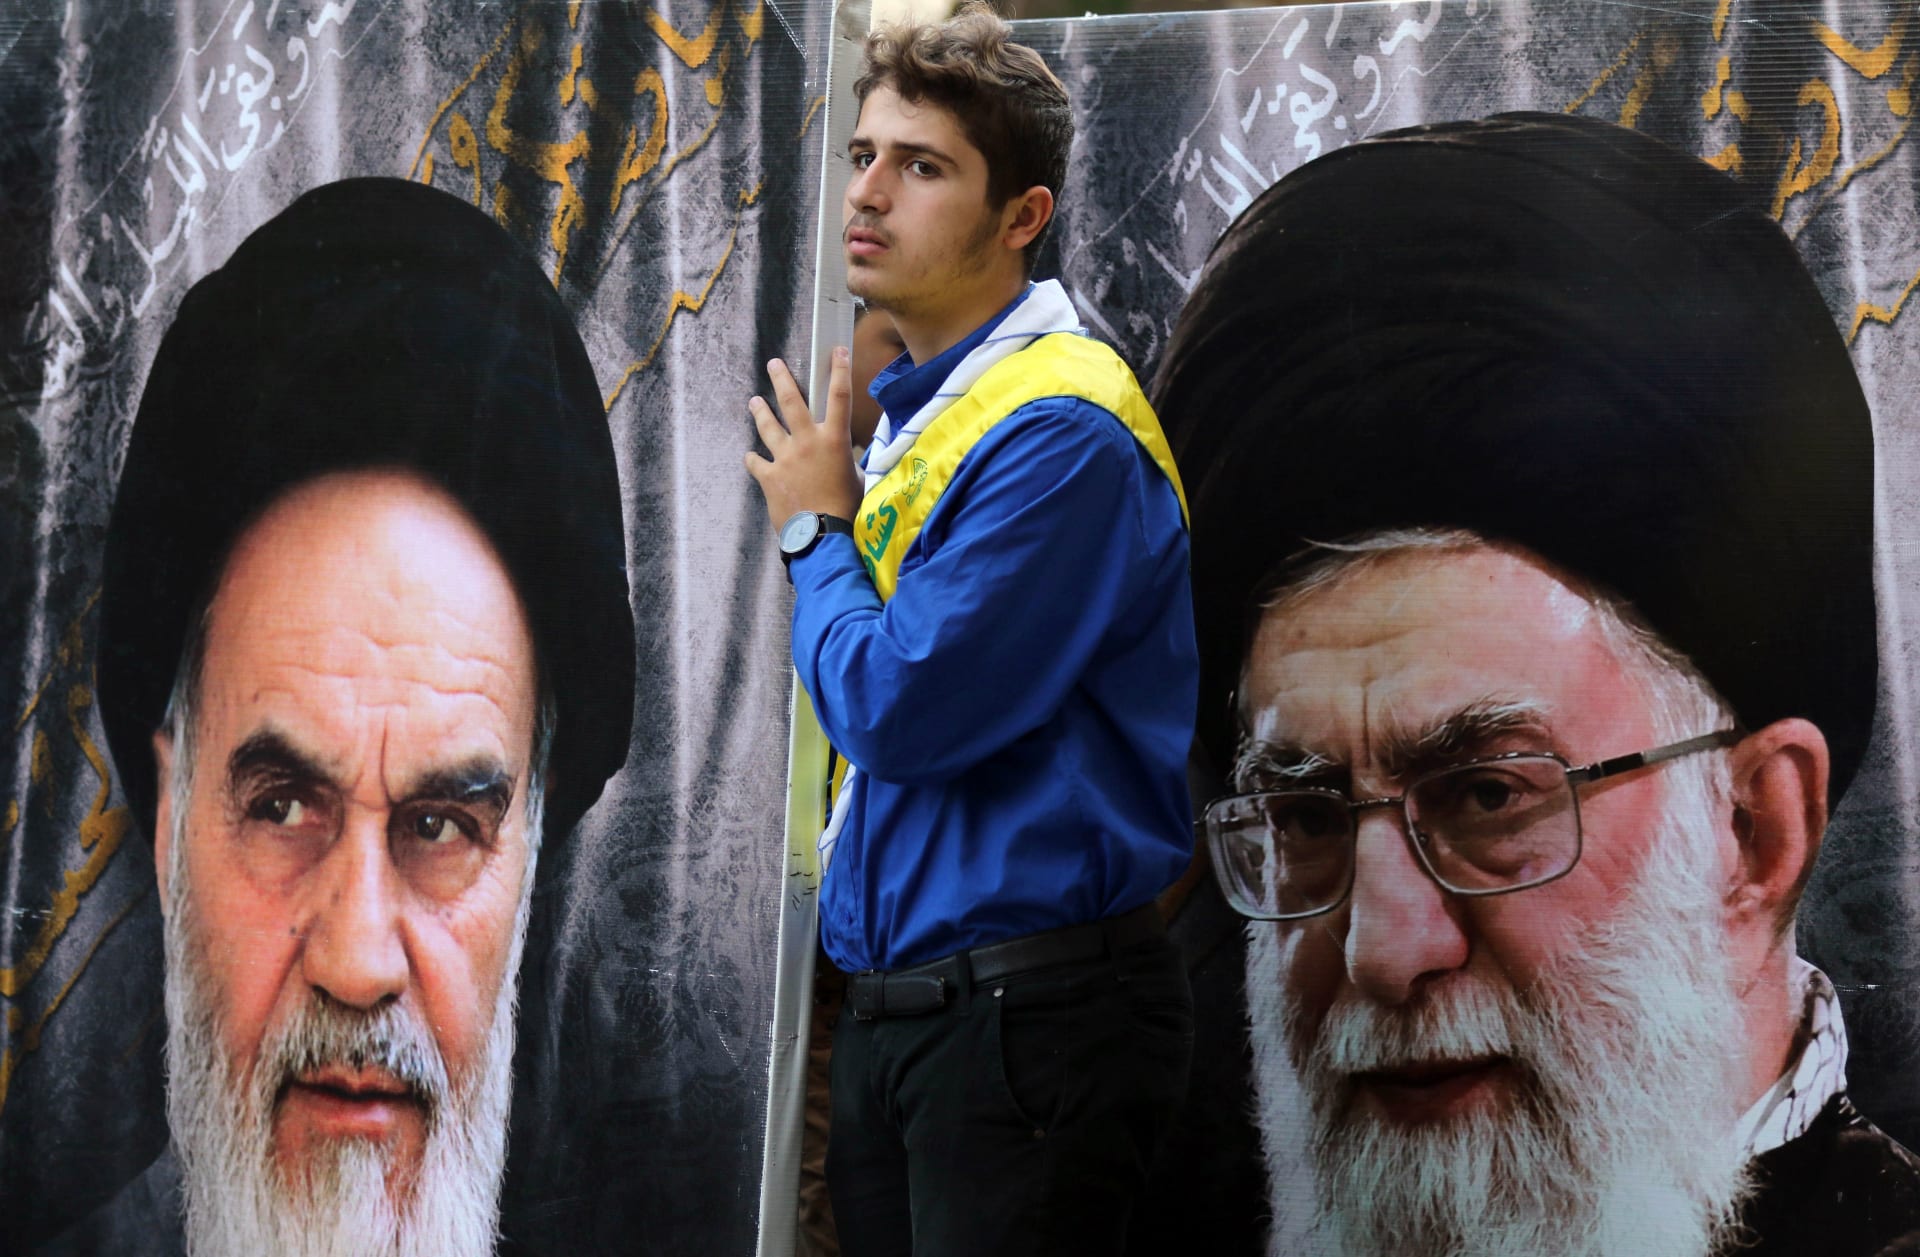 مؤتمر بإيران يدعو لتهيئة "الإنسان المنتظر" وخامنئي يعد بدور واسع 